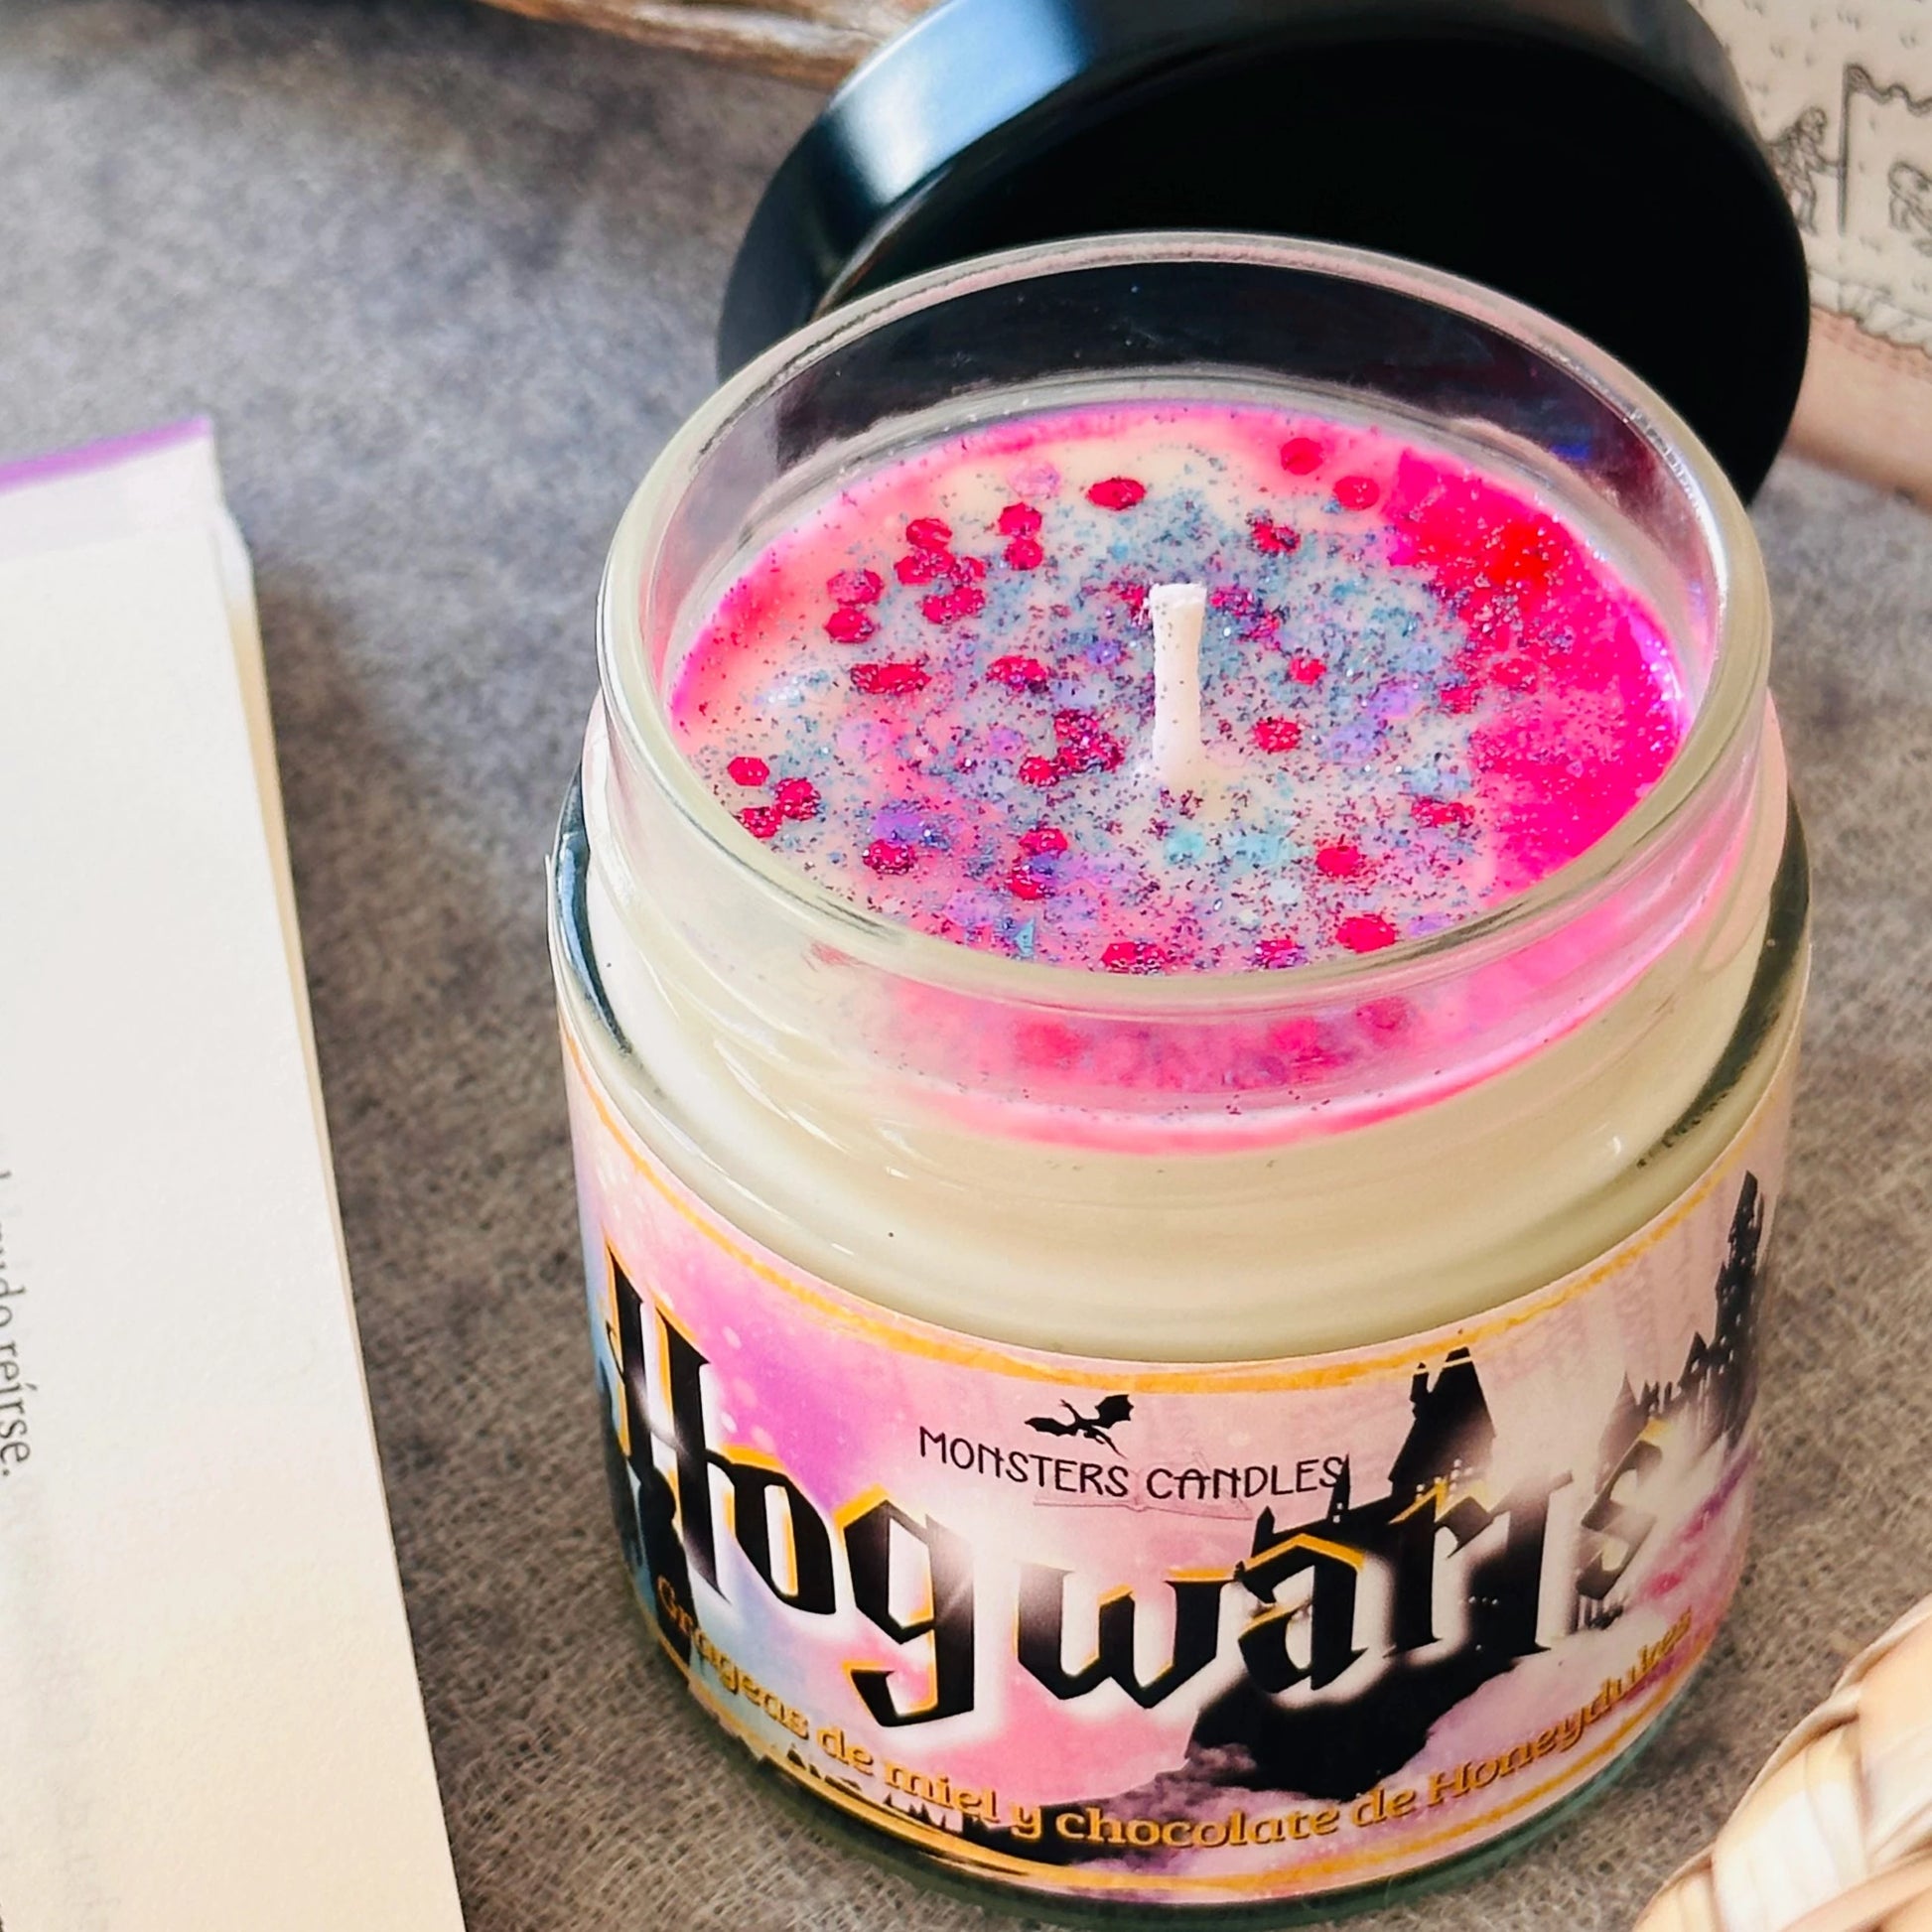 Vela “Hogwarts” Harry Potter – Monsters Candles ® - Velas Literarias  artesanas de soja 100% ecológica